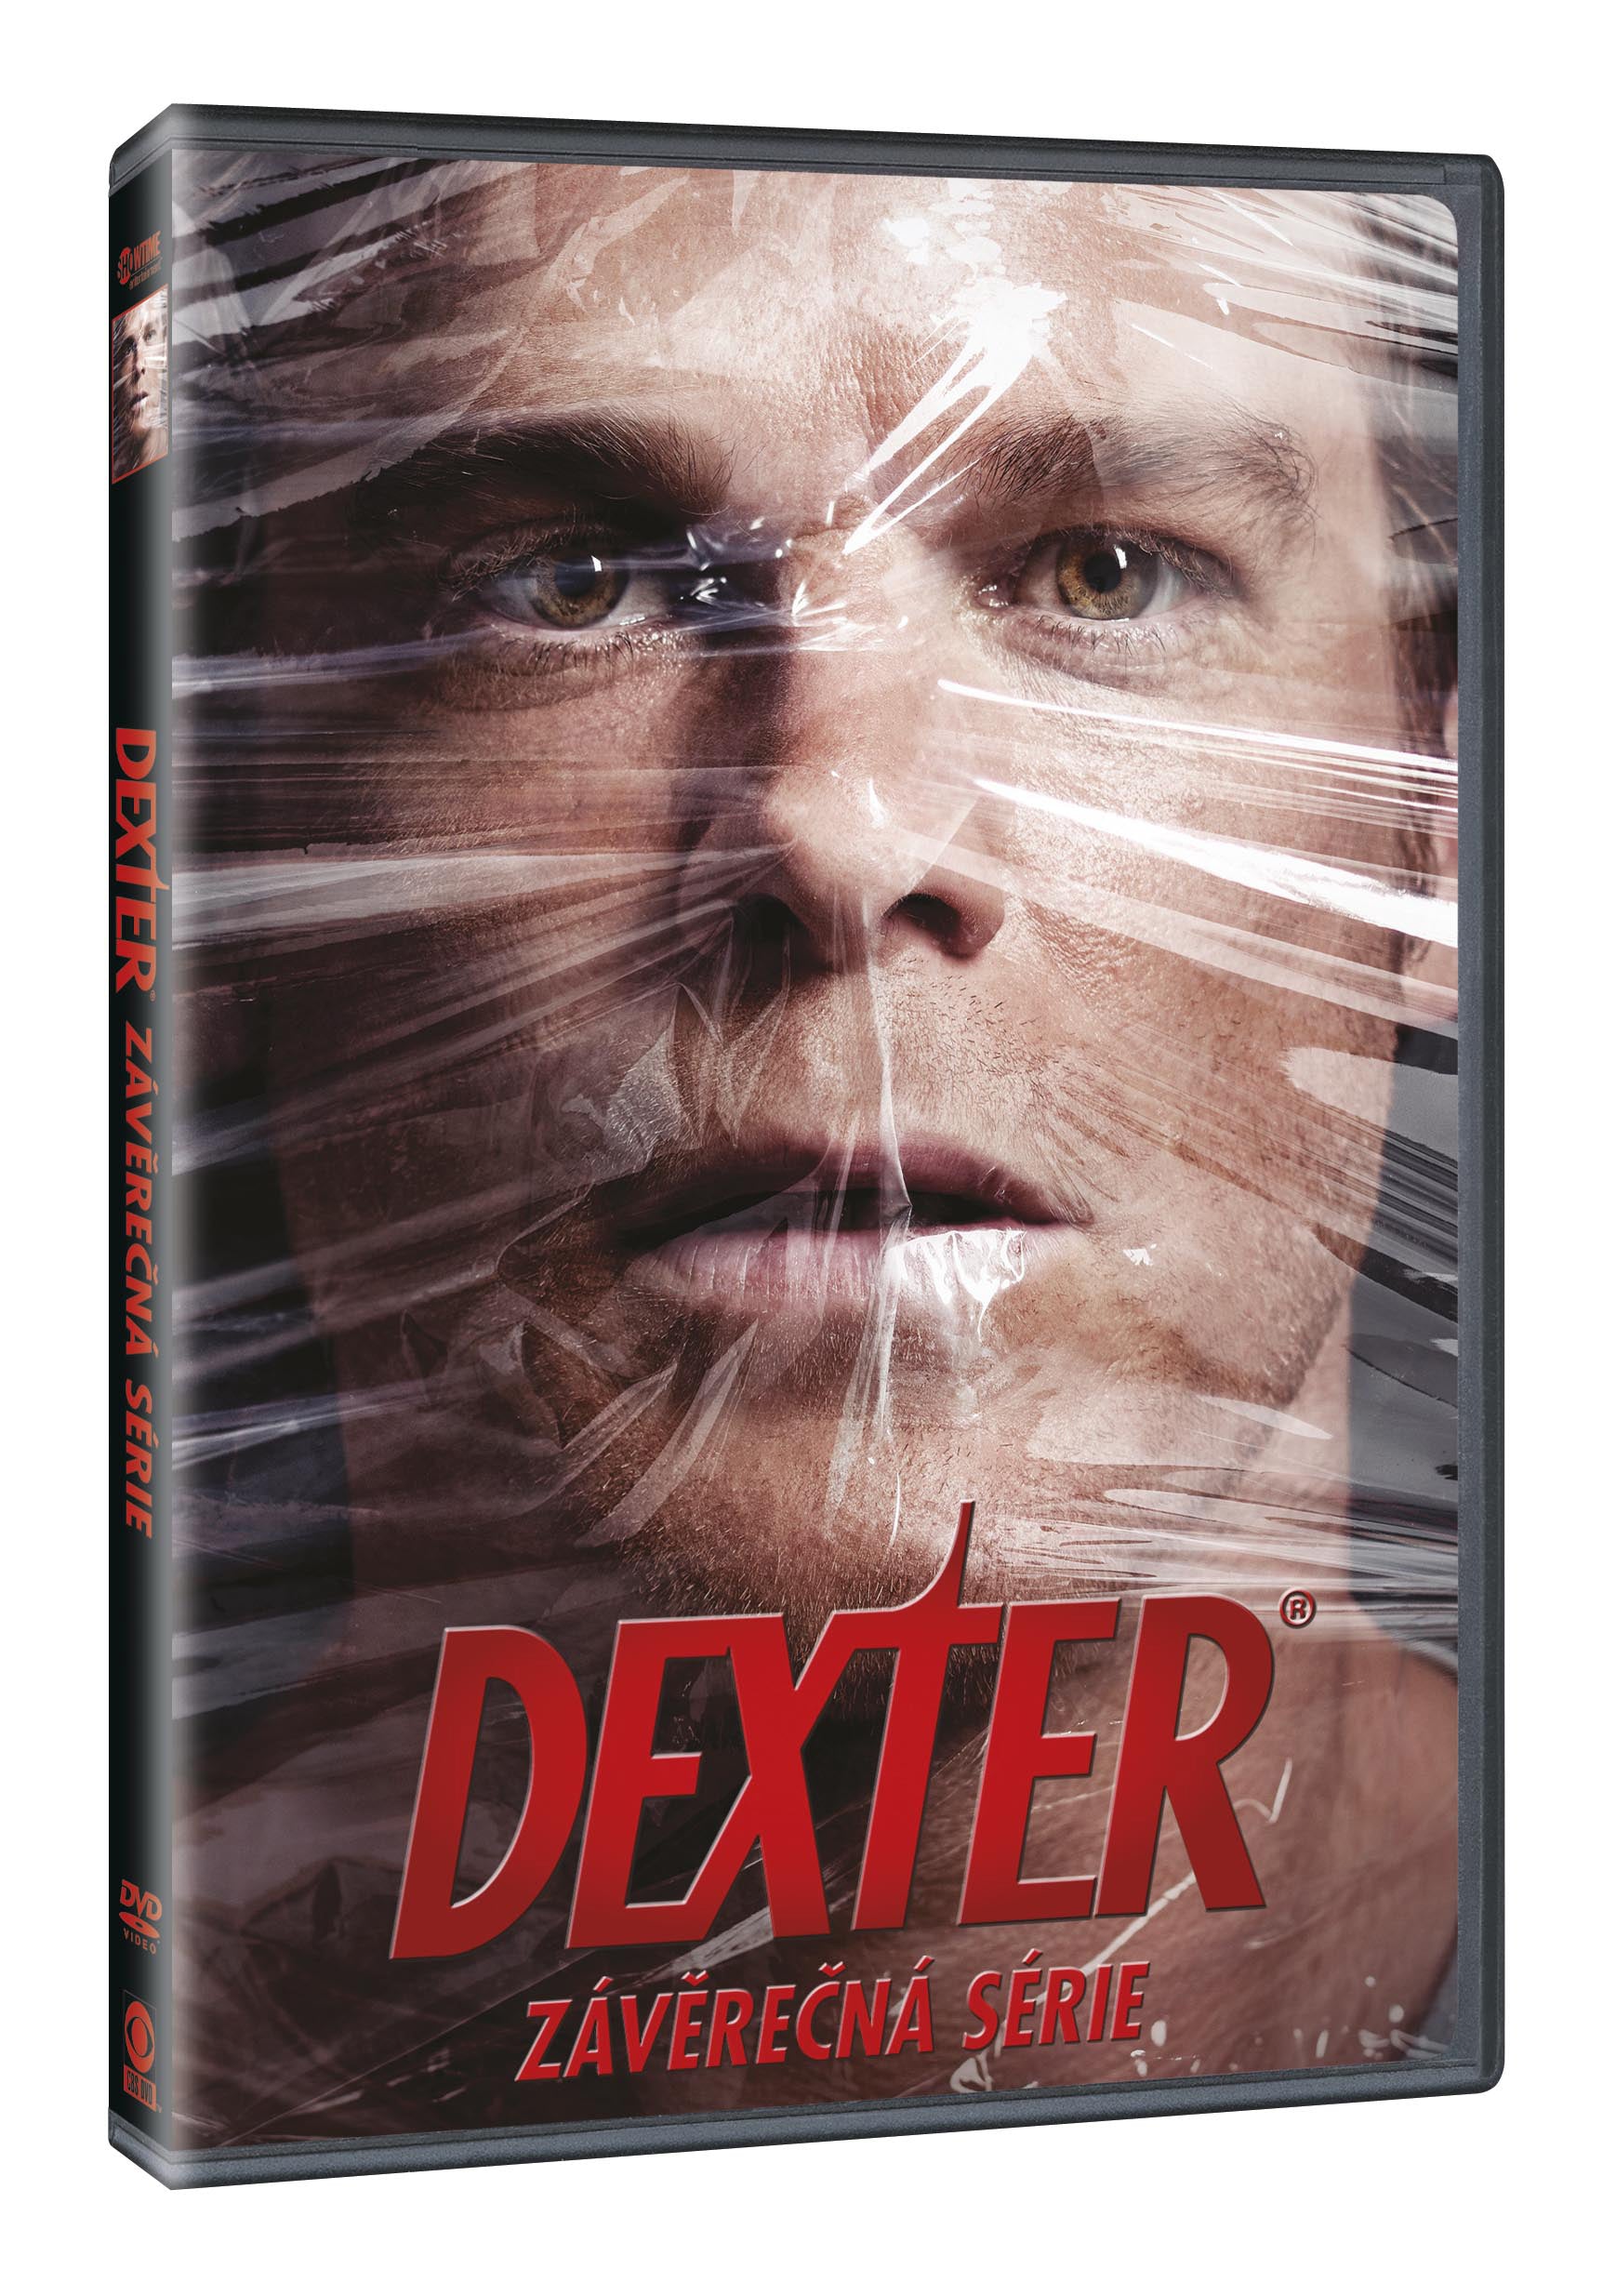 Dexter: Zaverecna serie 4DVD / Dexter: The Final Season